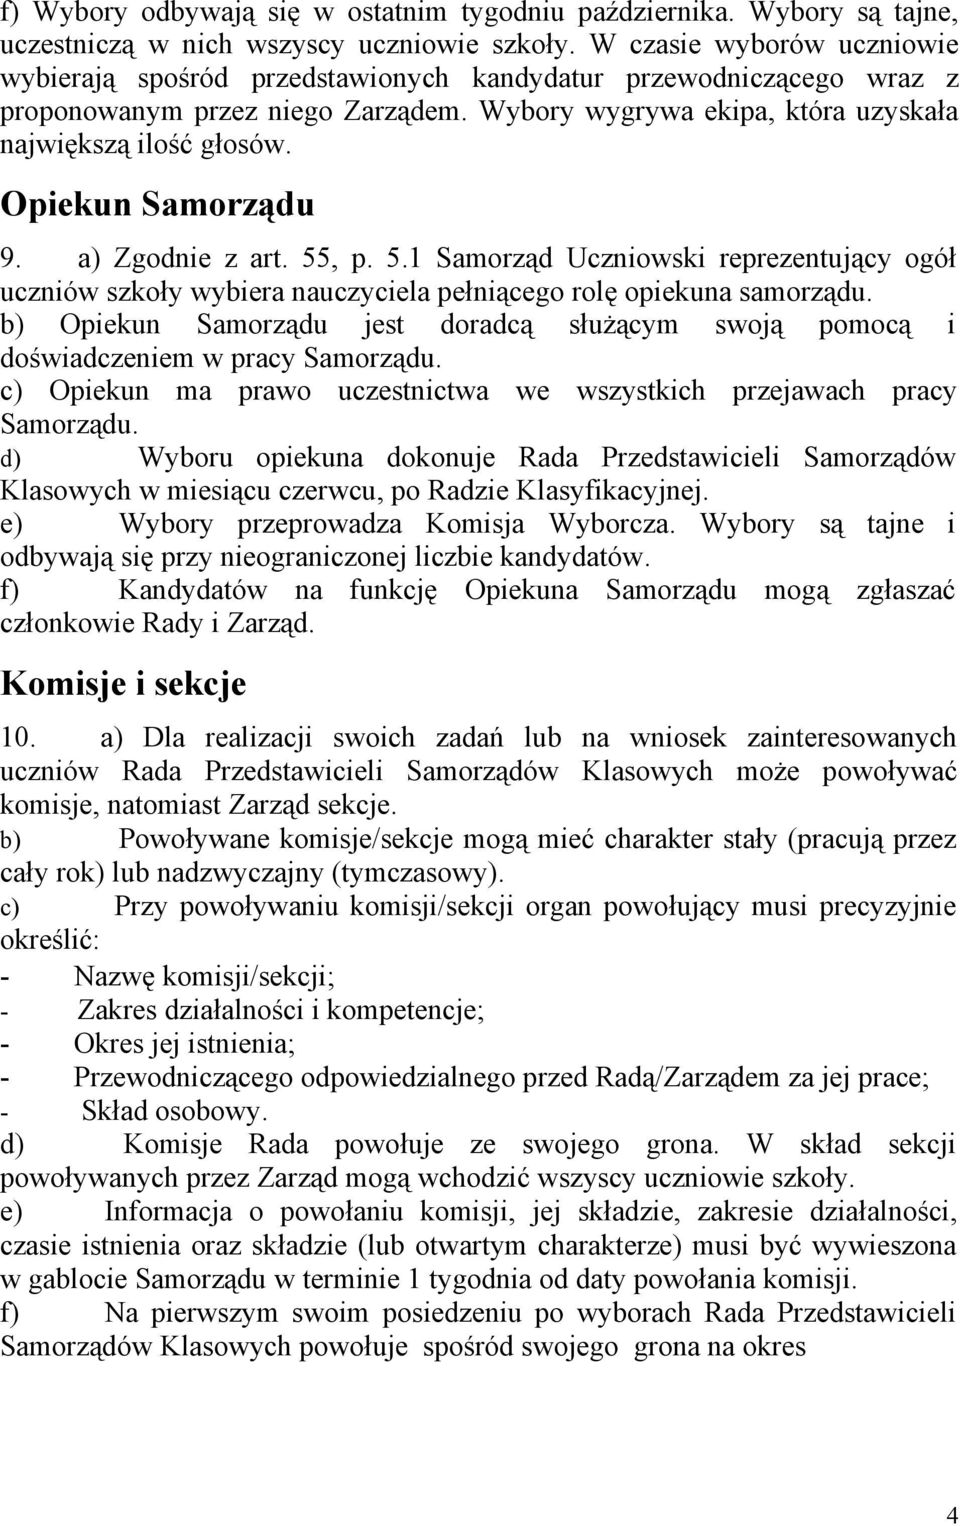 Opiekun Samorządu 9. a) Zgodnie z art. 55, p. 5.1 Samorząd Uczniowski reprezentujący ogół uczniów szkoły wybiera nauczyciela pełniącego rolę opiekuna samorządu.